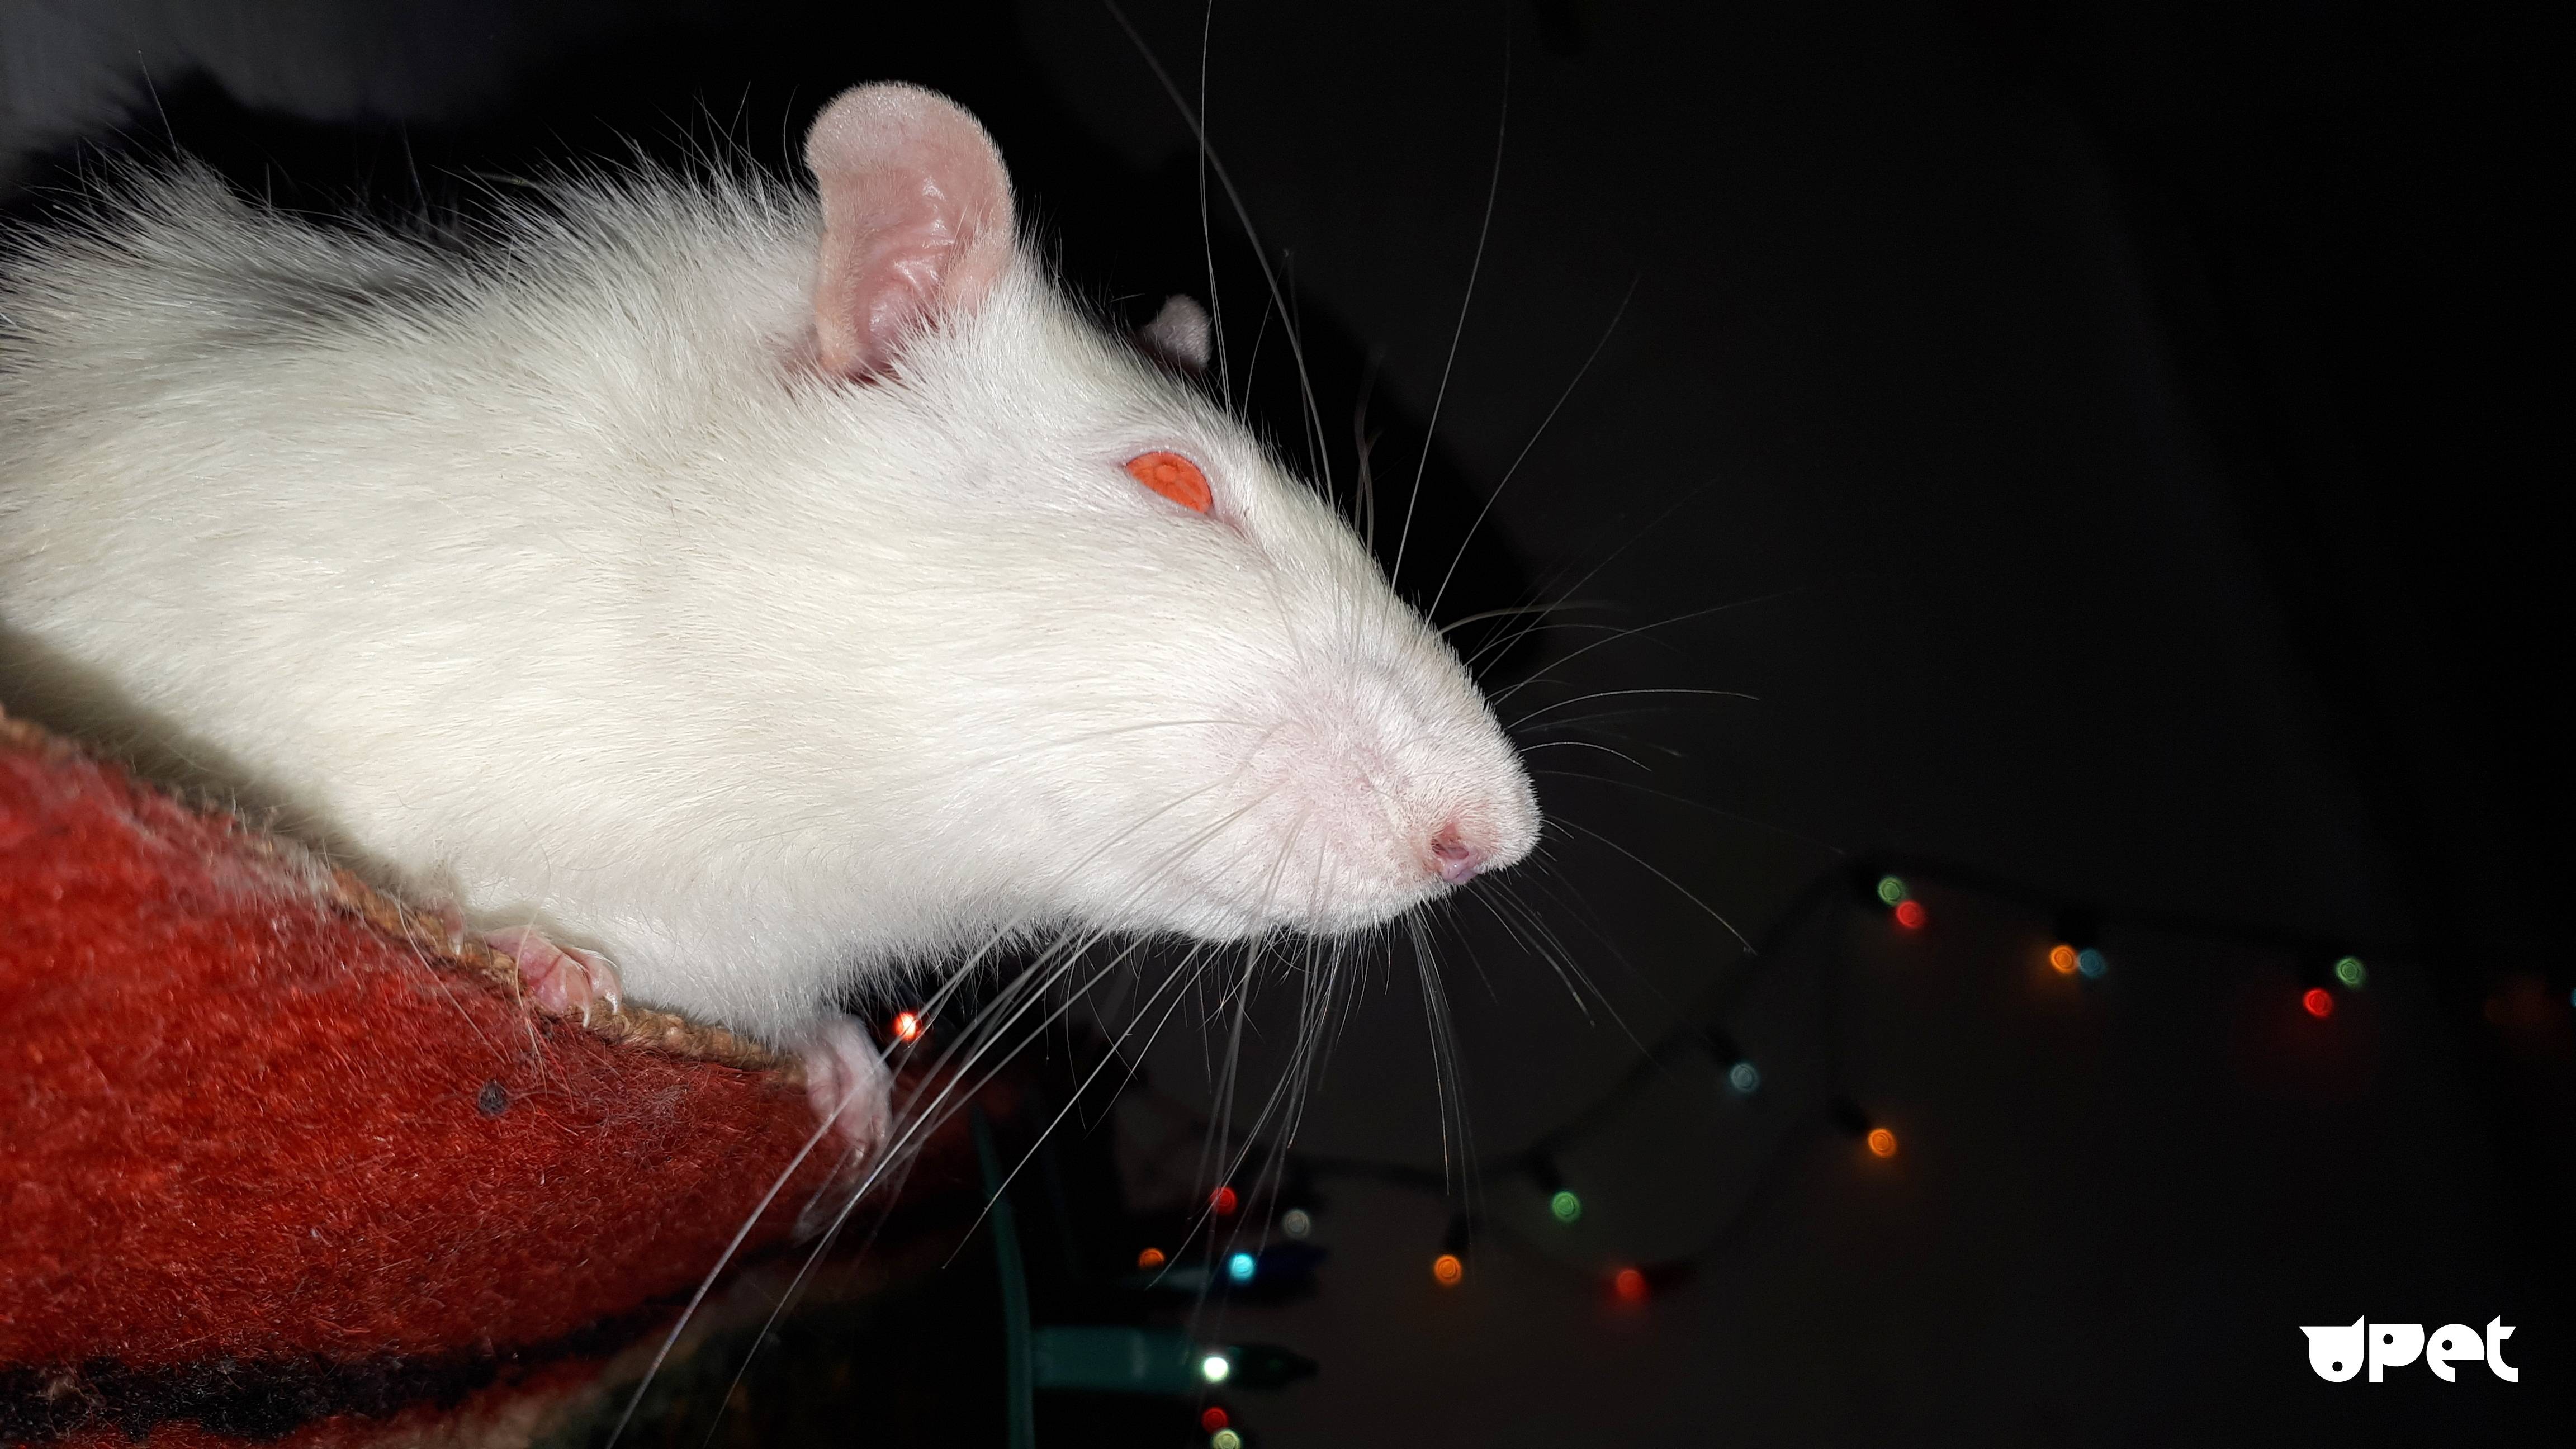 Домашняя декоративная крыса: уход и содержание в домашних условиях (фото)